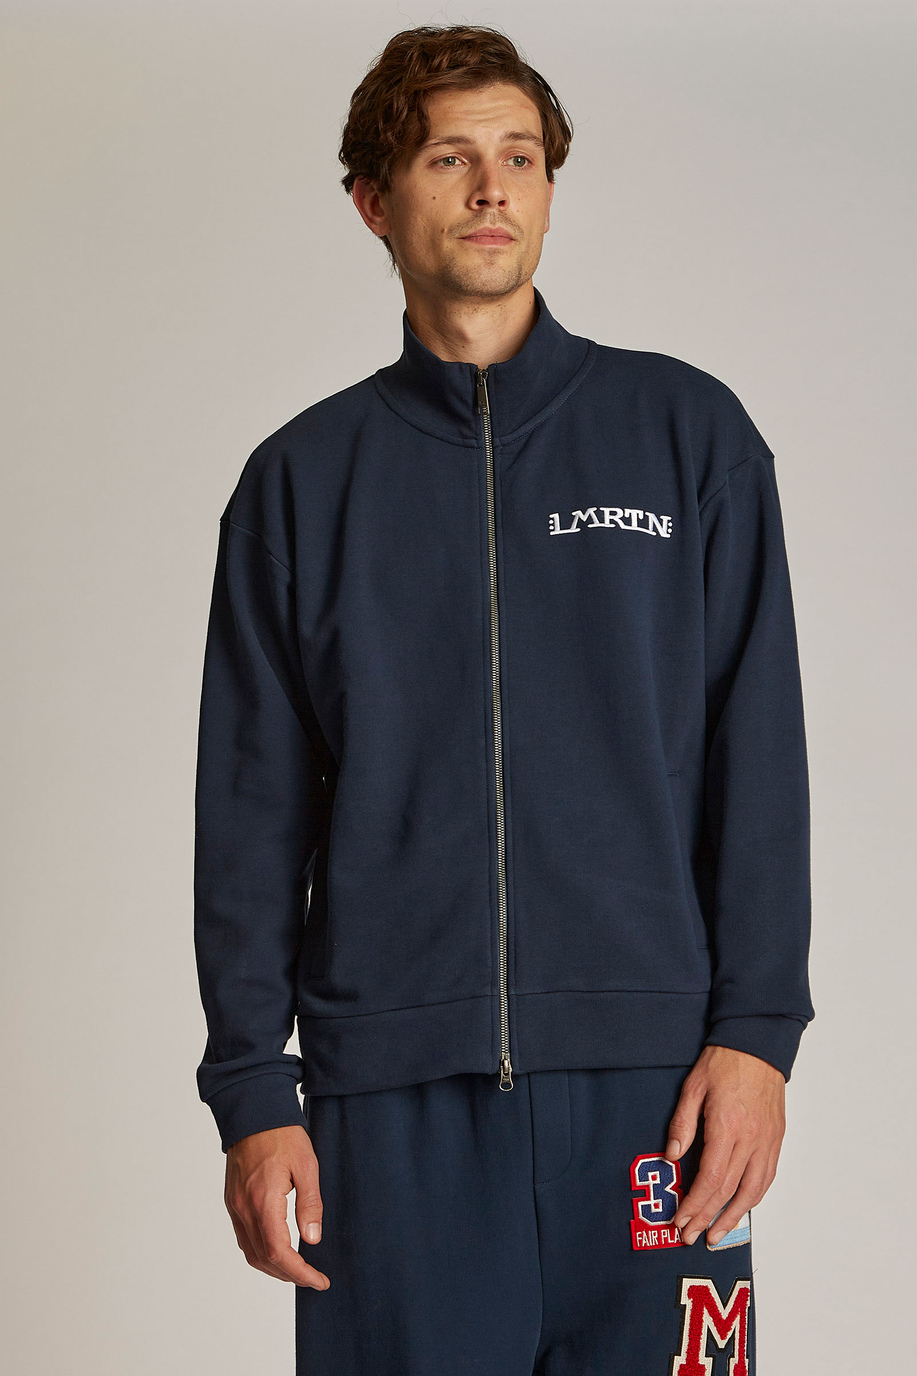 Men's oversized zip-up sweatshirt in 100% cotton fabric - Inspiration | La Martina - Official Online Shop